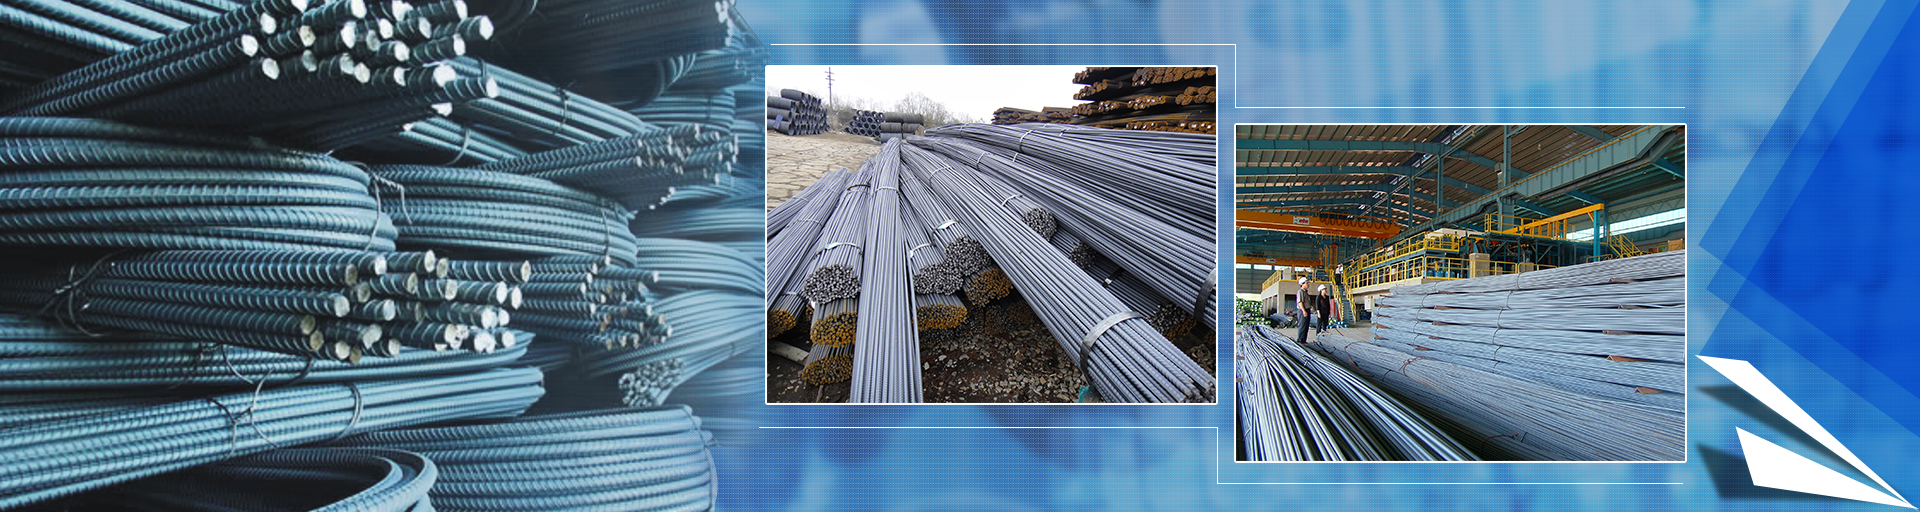 Vật liệu xây dựng Mạnh Hà steel giá rẻ chất lượng